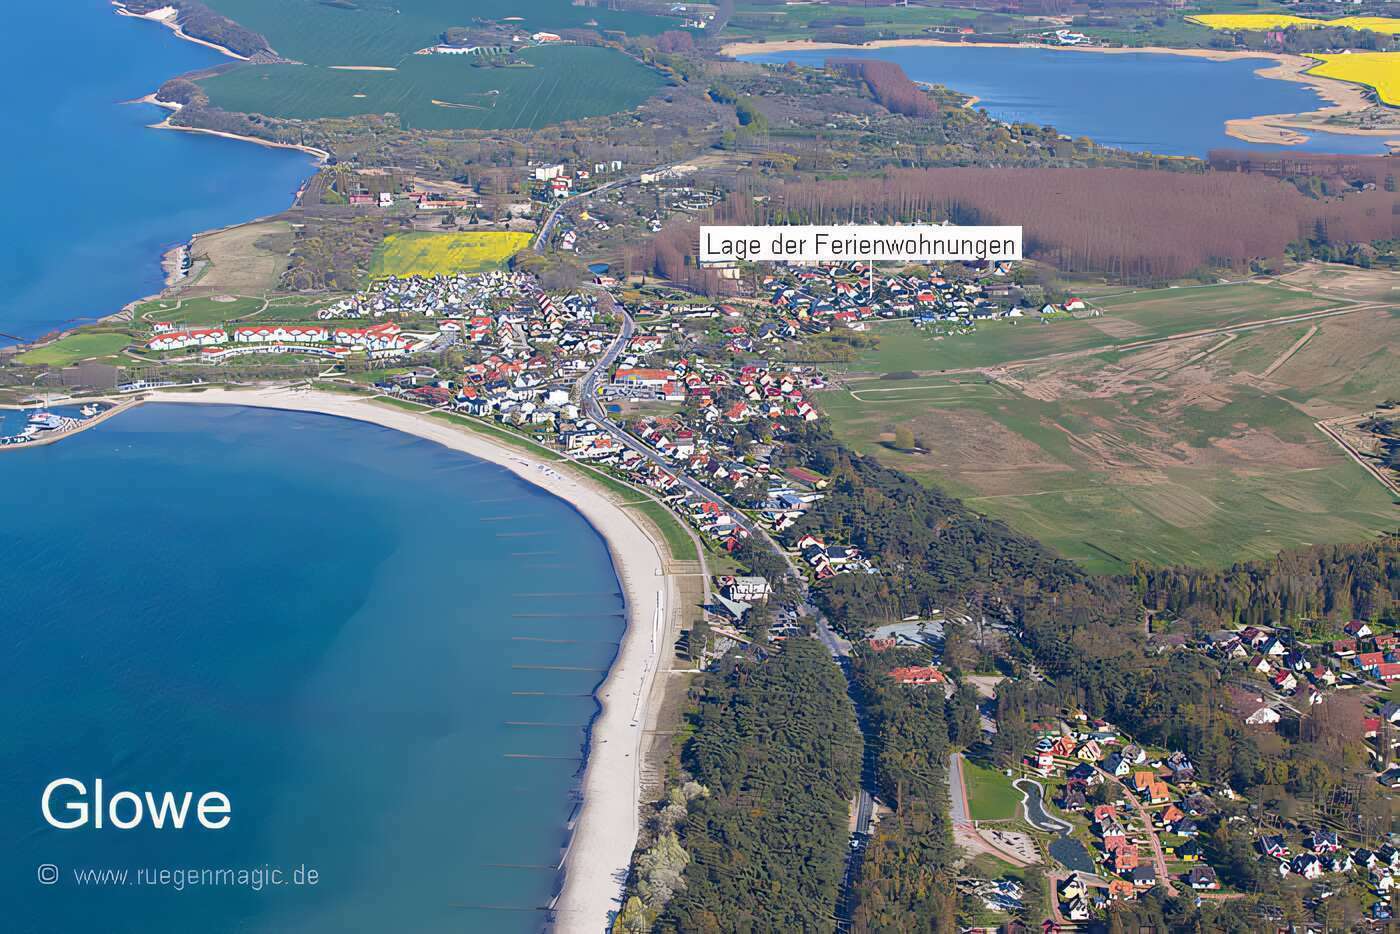 Luftaufnahme von Glowe, mit Lage des Ferienwohnung Wiesengrund der Familie Kiencke